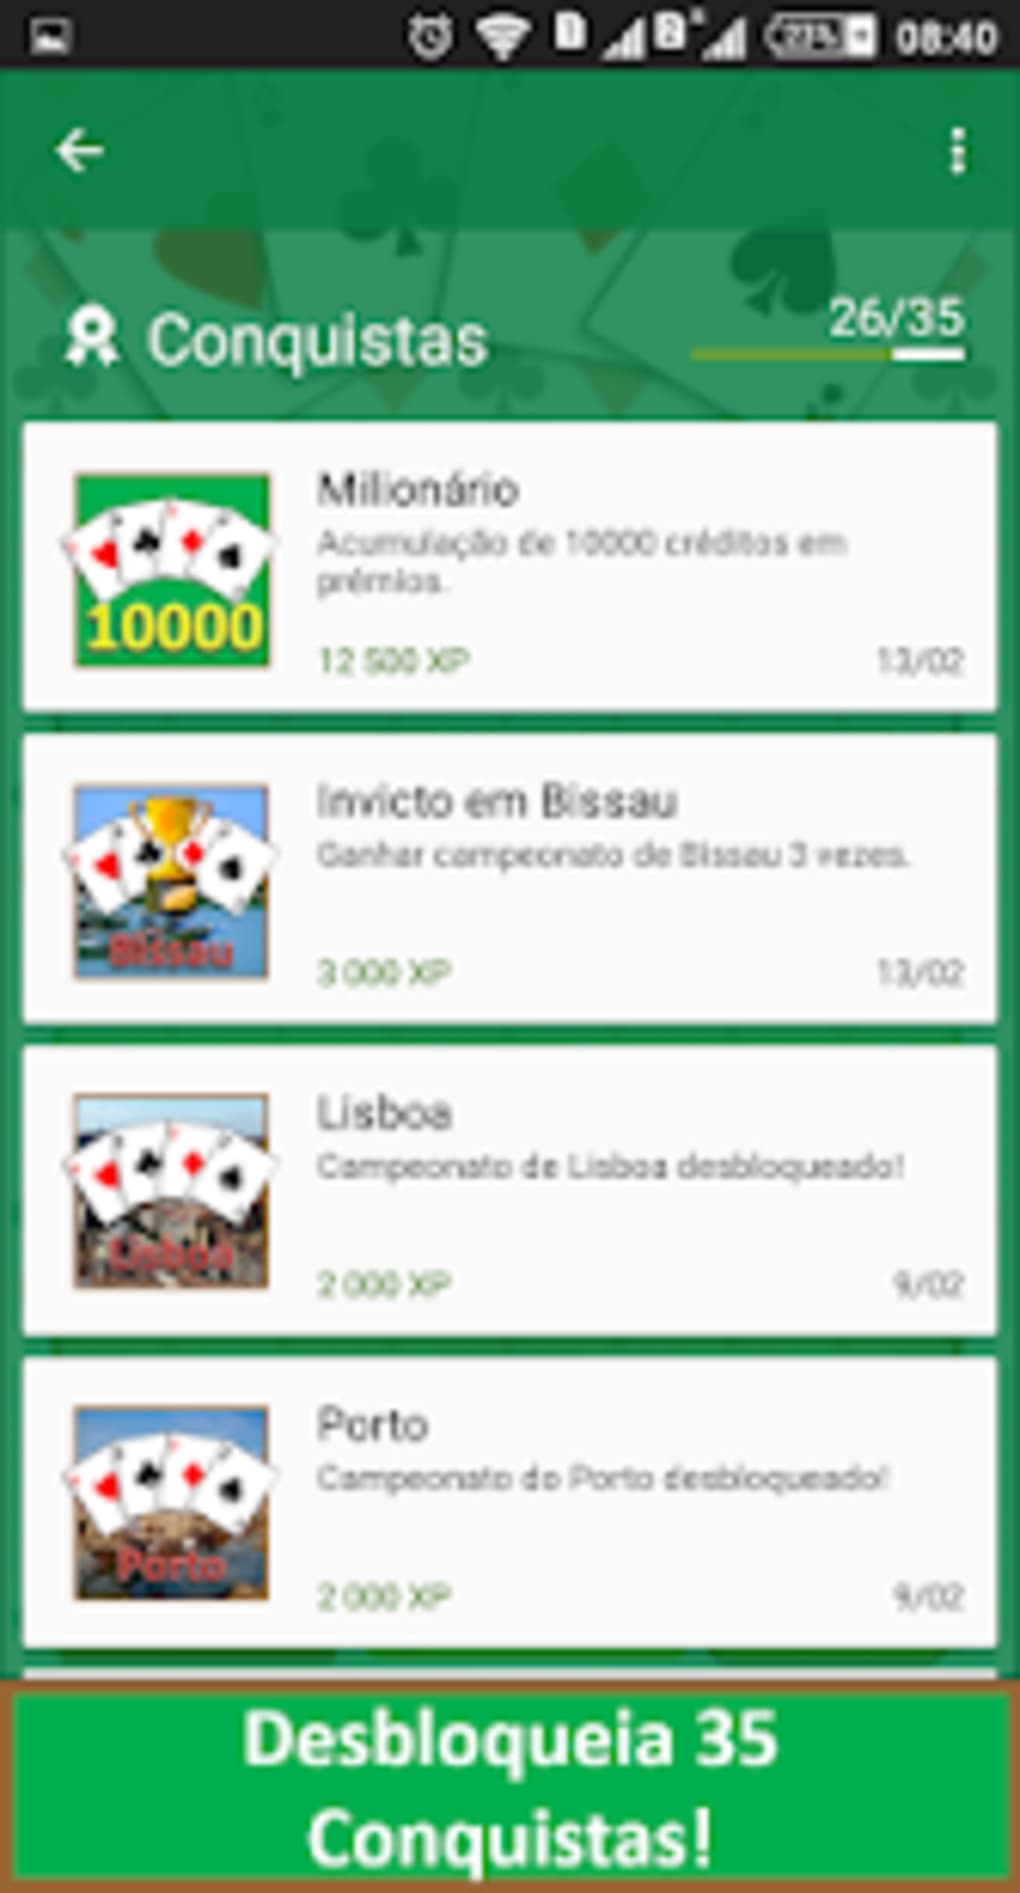 Sueca Online - Jogue Grátis APK (Android Game) - Baixar Grátis